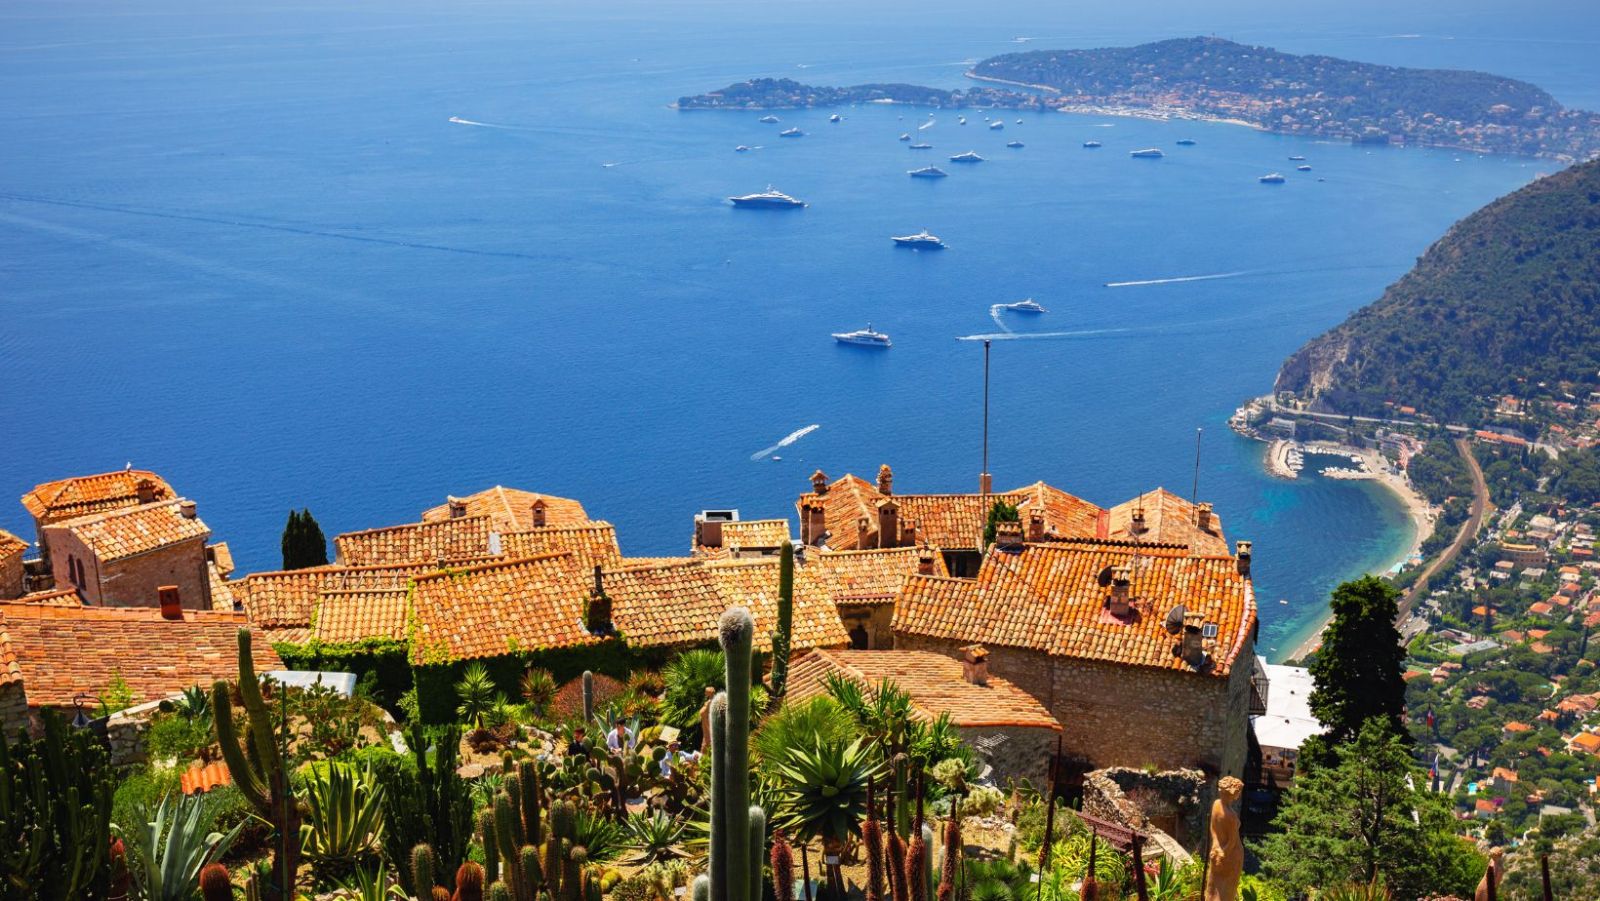 Ce village perché sur une falaise offre les plus belles vues de la Méditerranée !